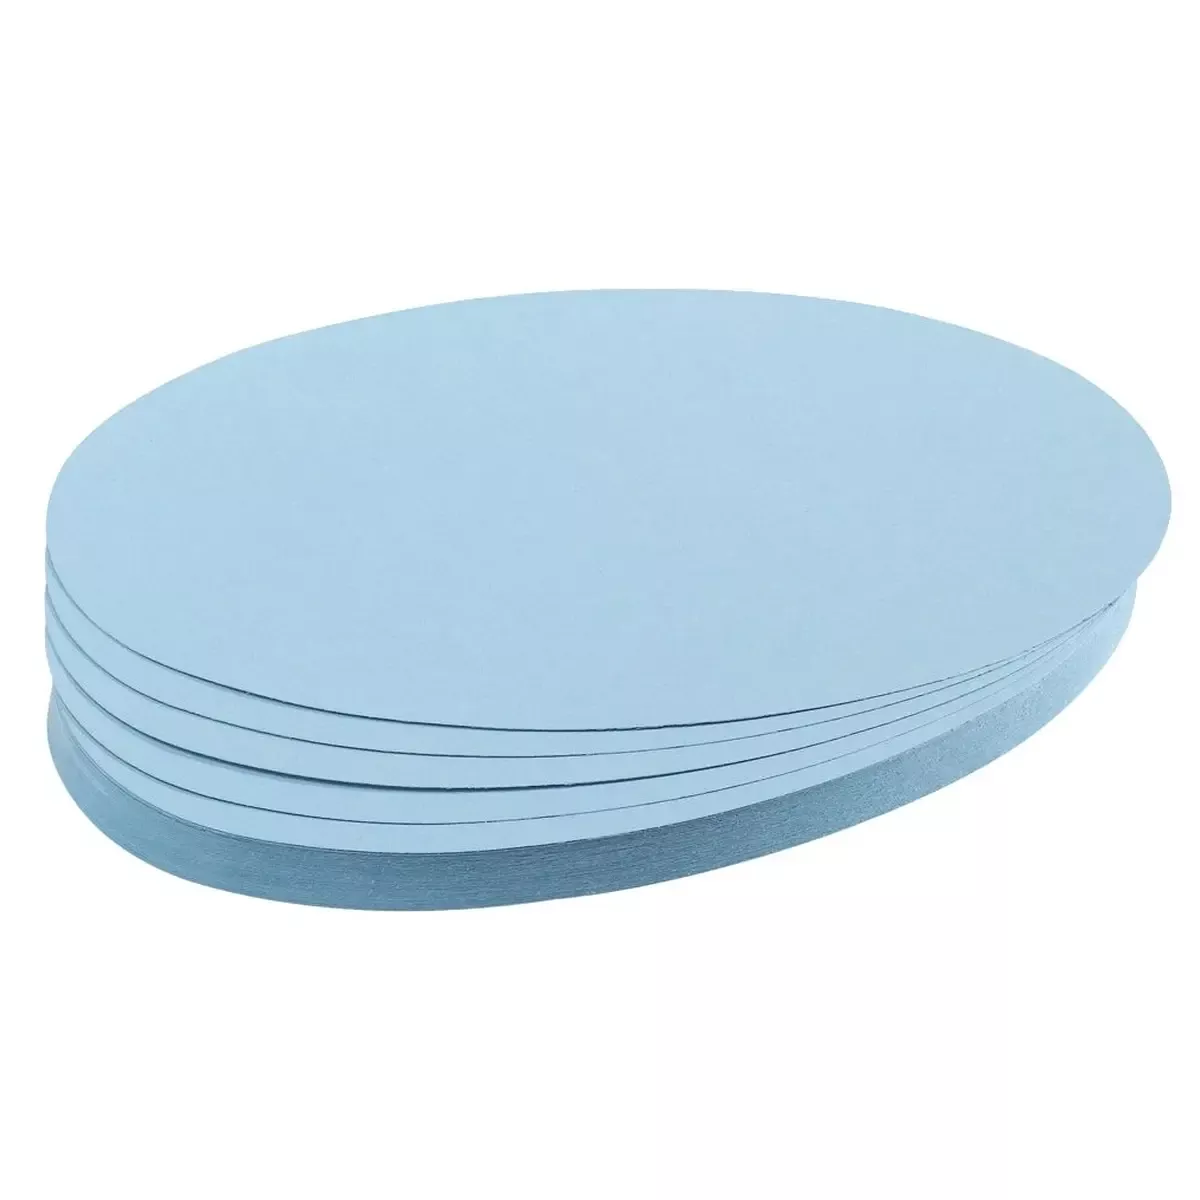 Moderationskarte - Oval, 190 x 110 mm, hellblau, 500 Stück